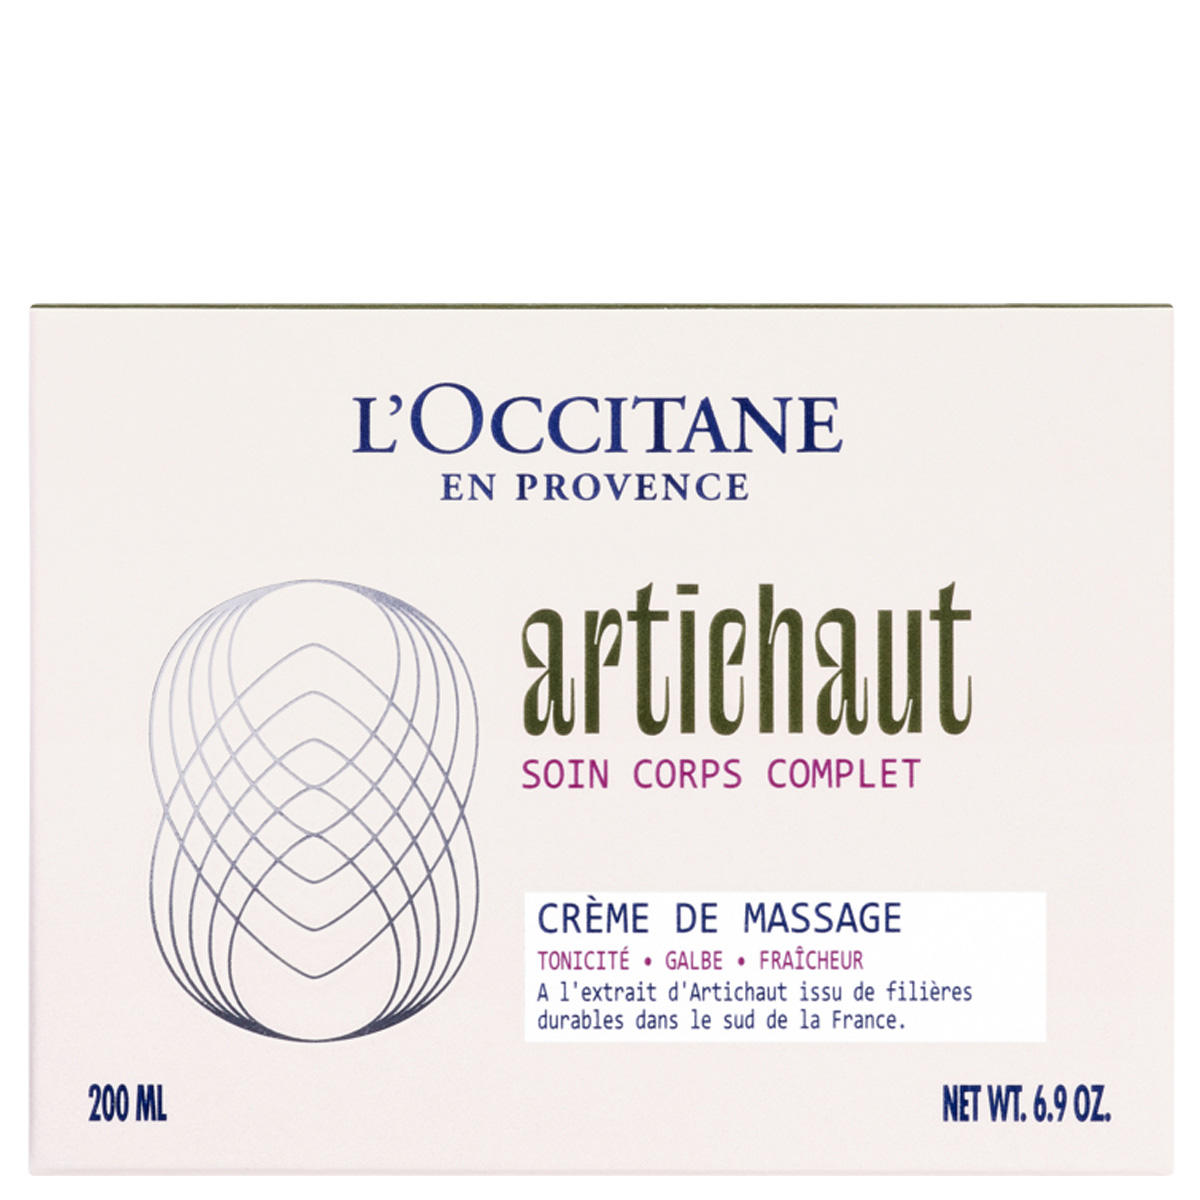 L'Occitane Artichaut Crème de Massage Lichaamscrème 200 ml - 4